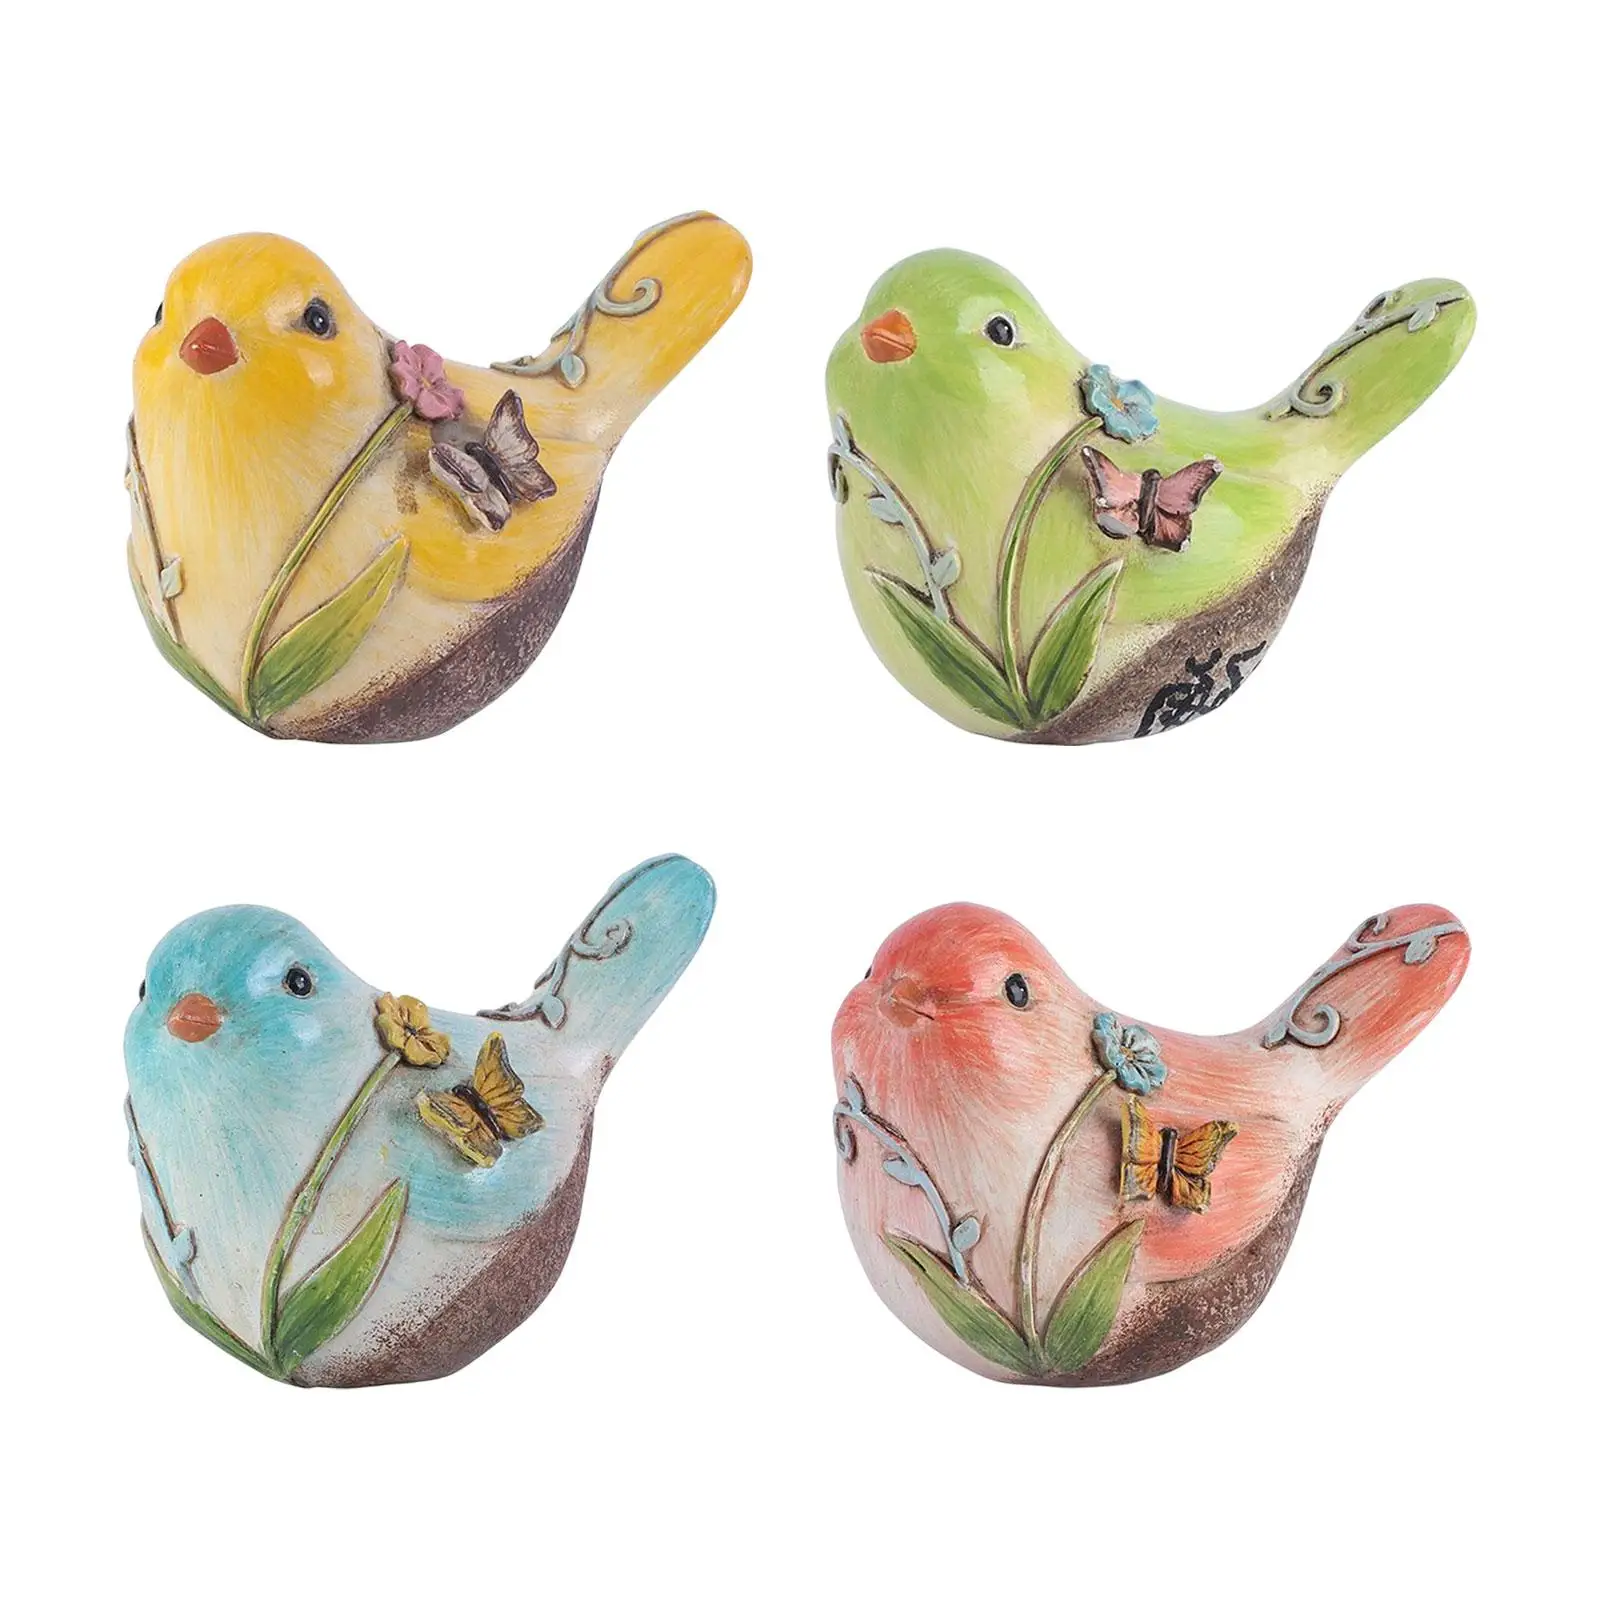 Bird Statue Ornament Table Centerpiece Animals Miniature Figurines